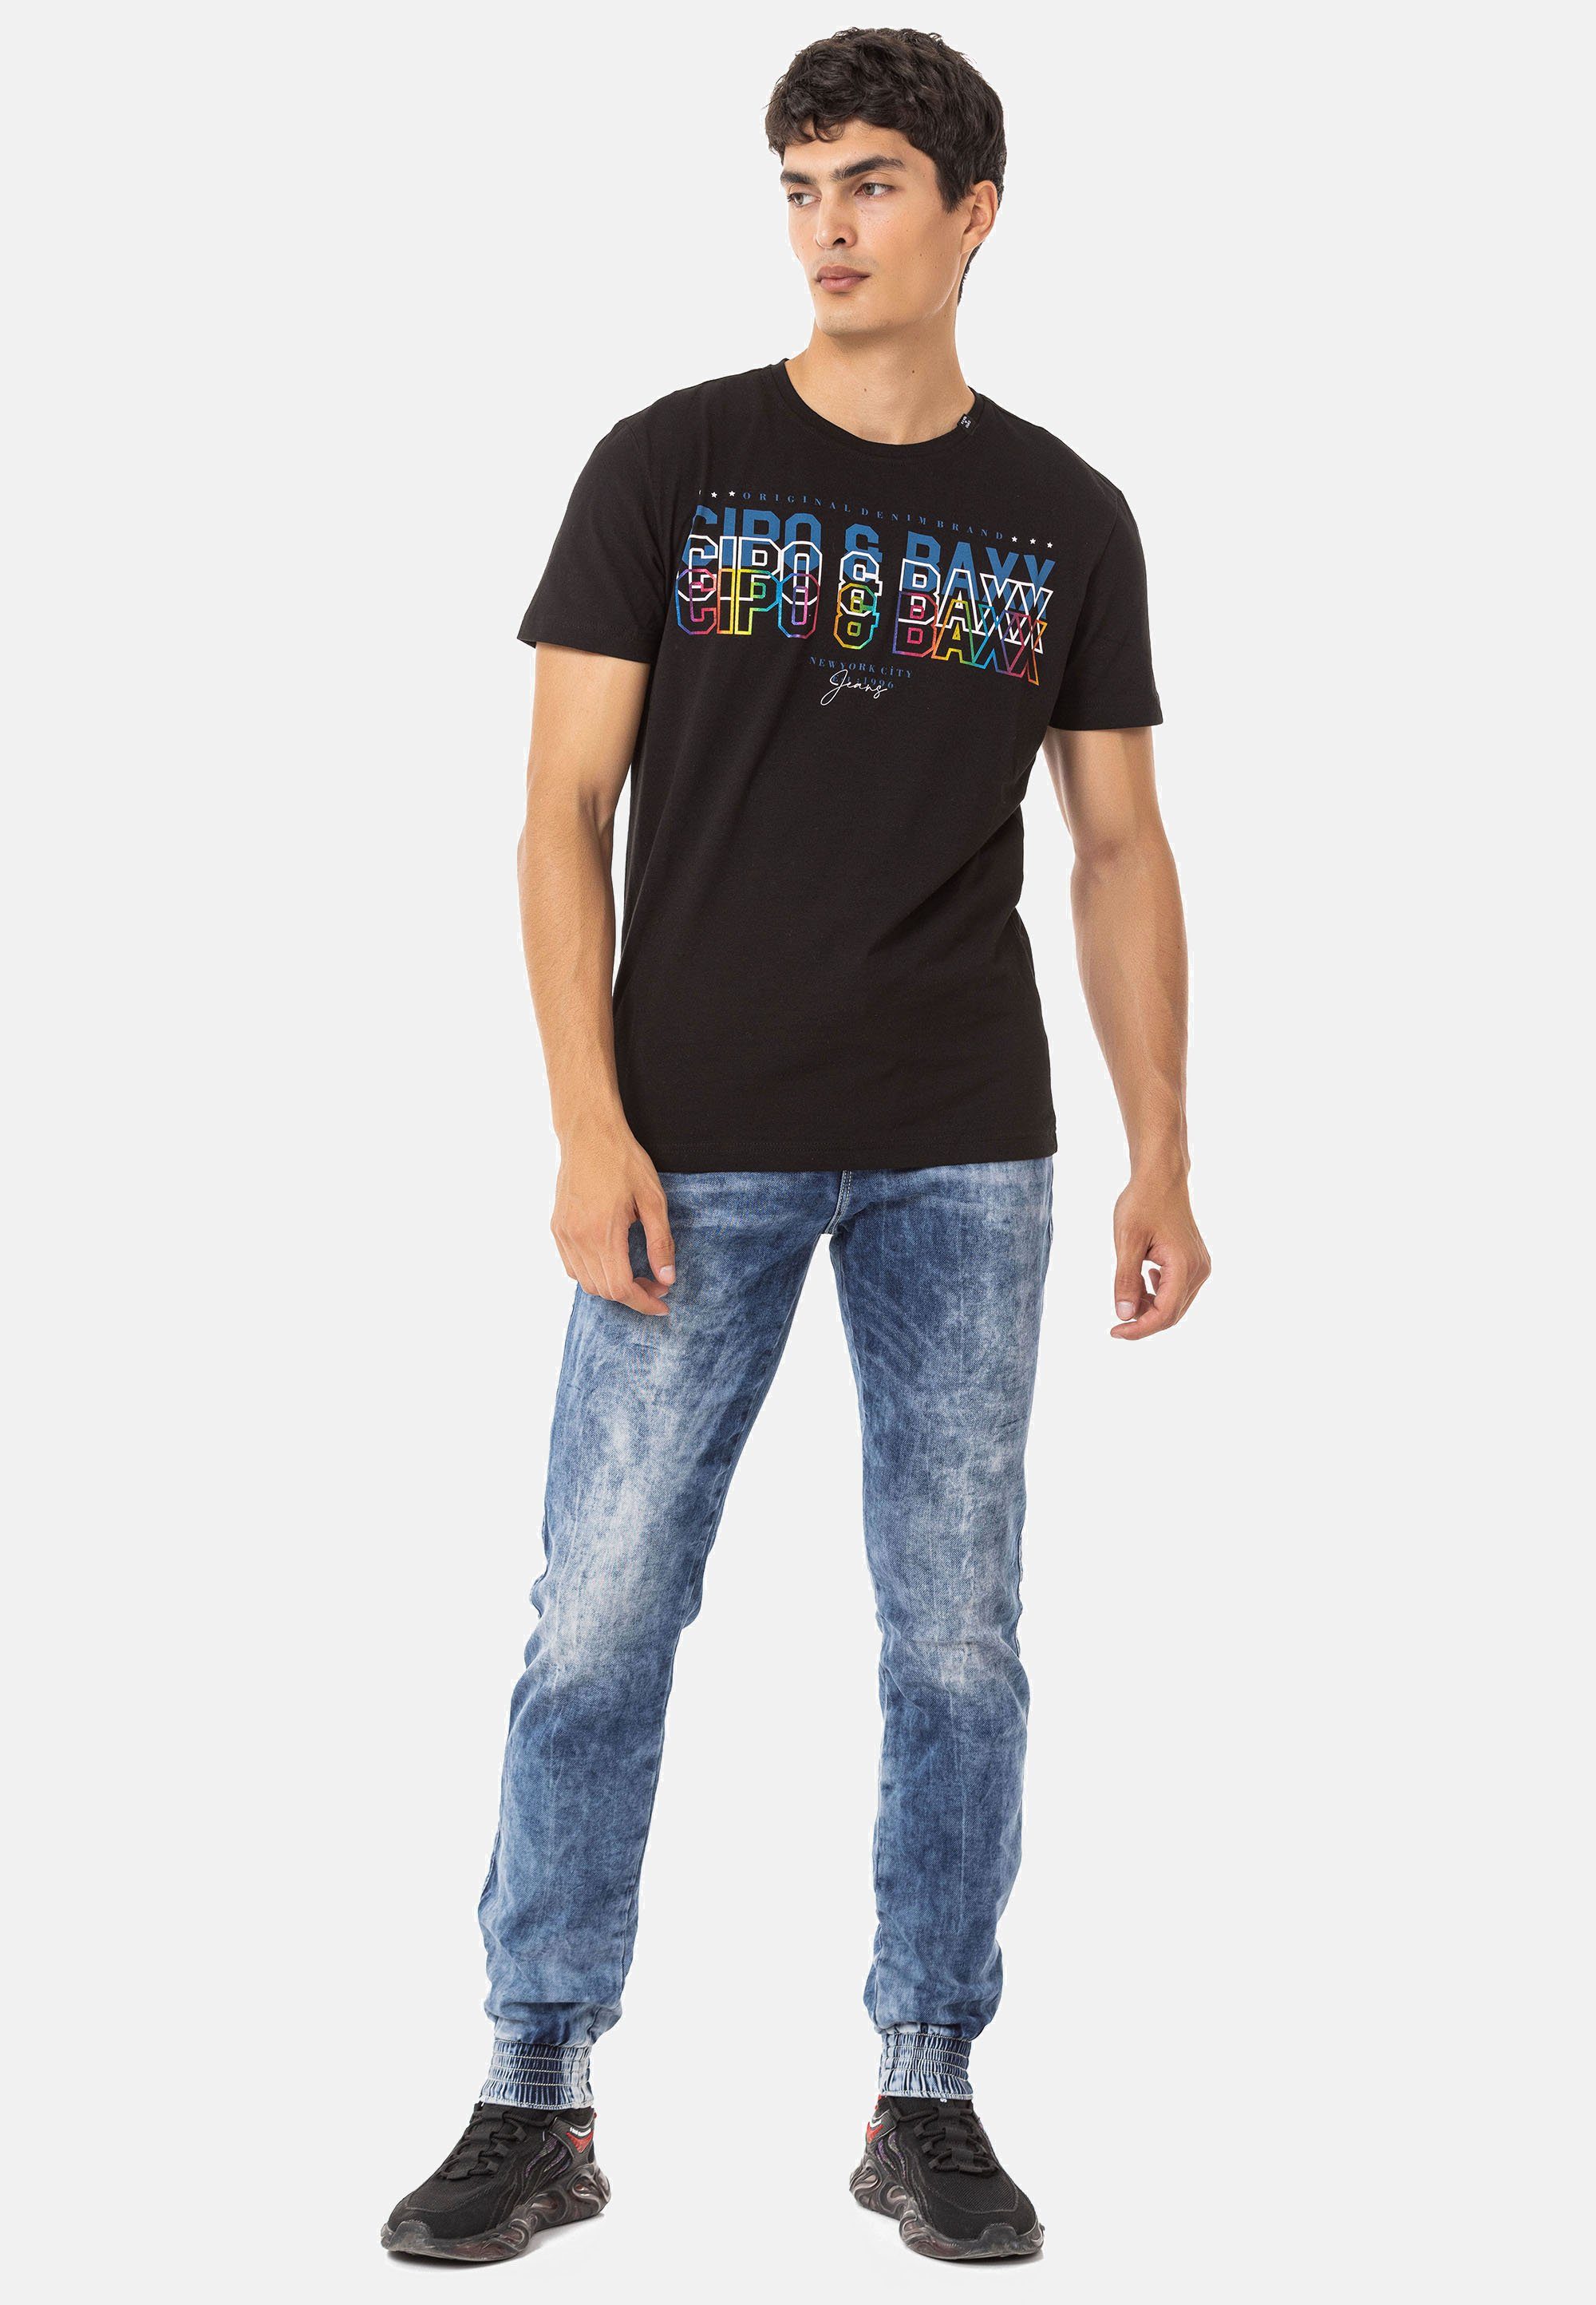 T-Shirt trendigem & Baxx Markenprint Cipo CT717 mit schwarz